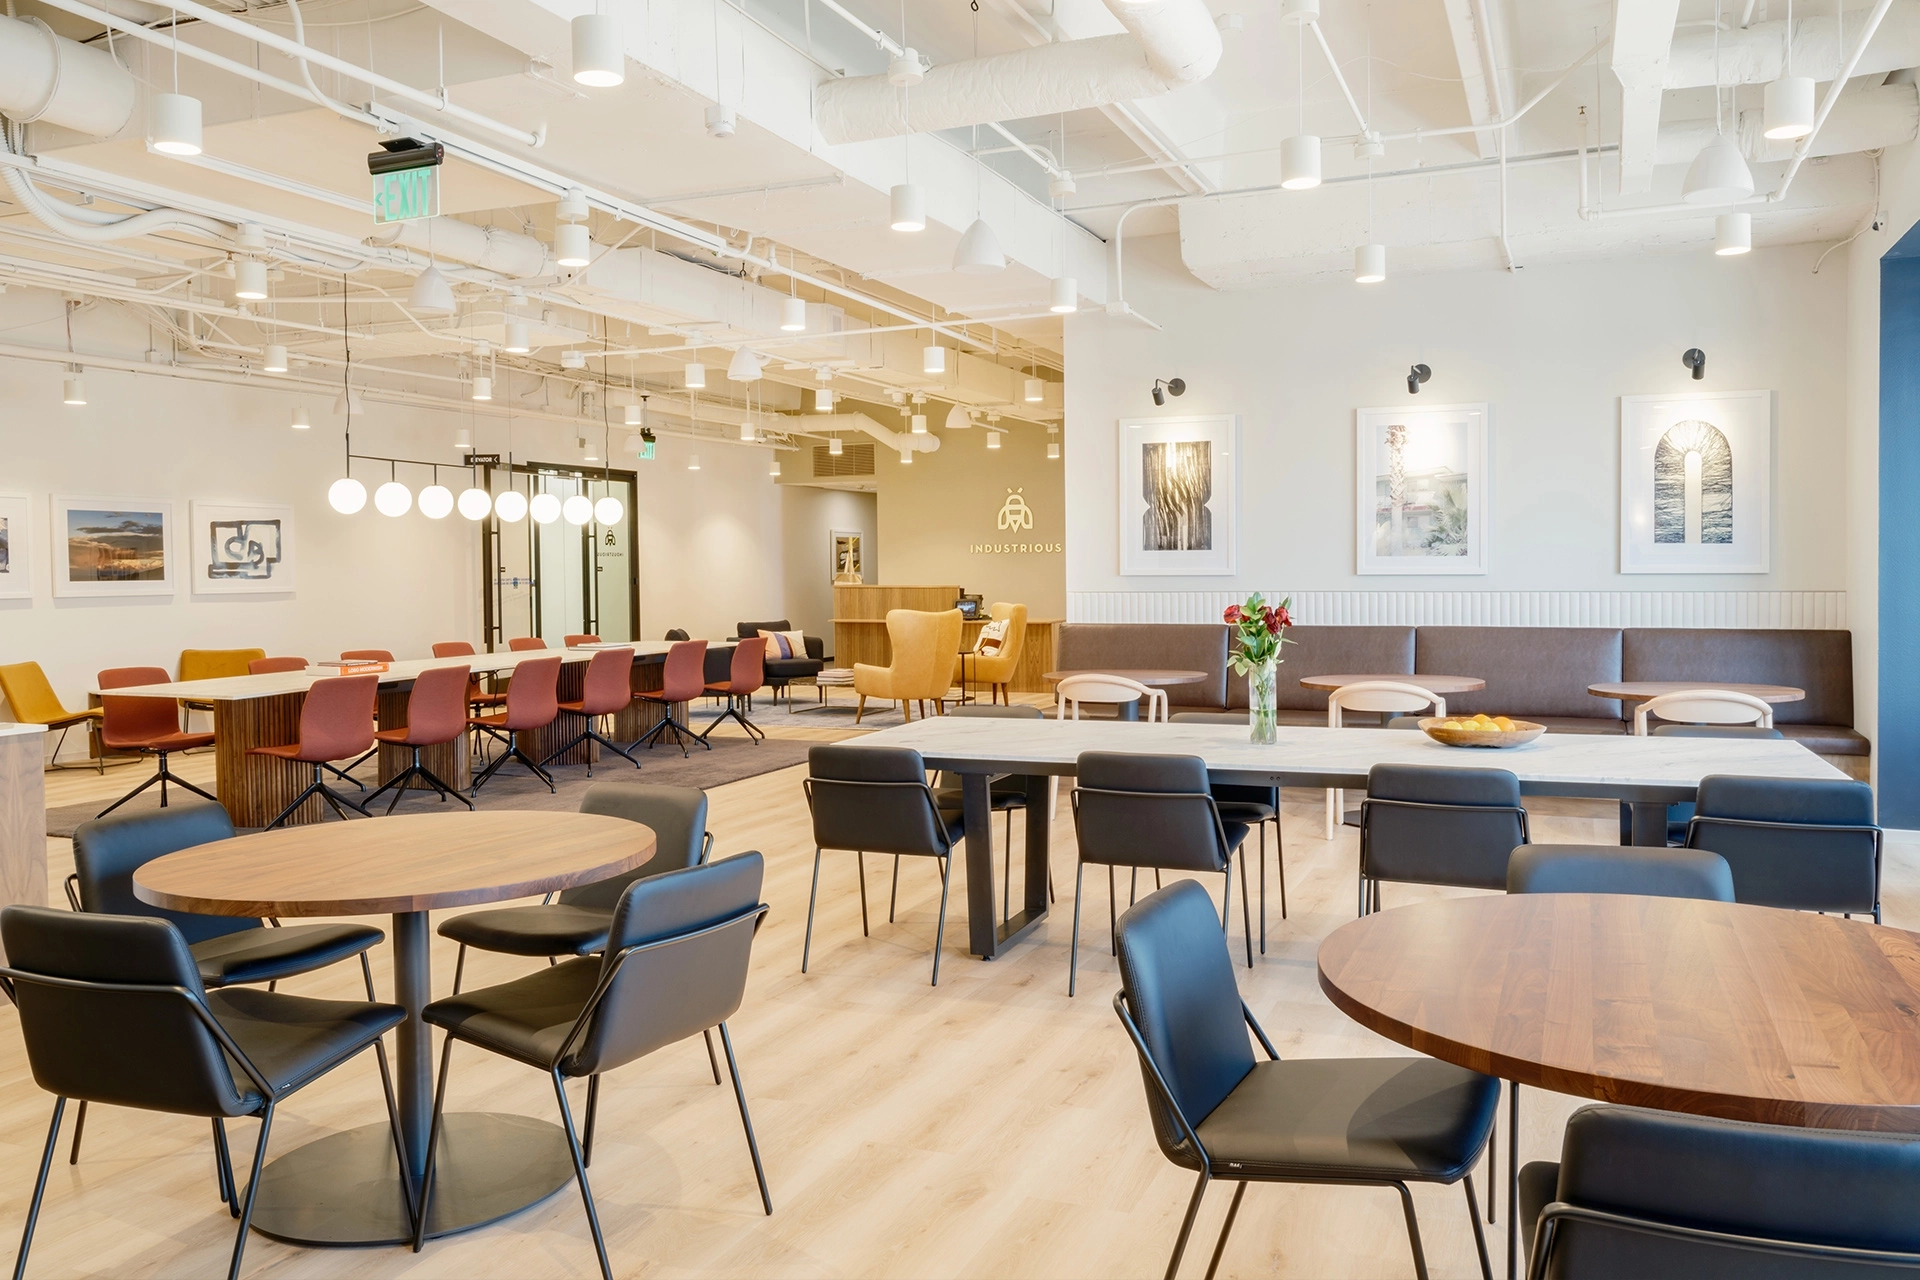 Moderne coworking-kantoorruimte in Austin met een verscheidenheid aan zitmogelijkheden en decoratieve verlichting.